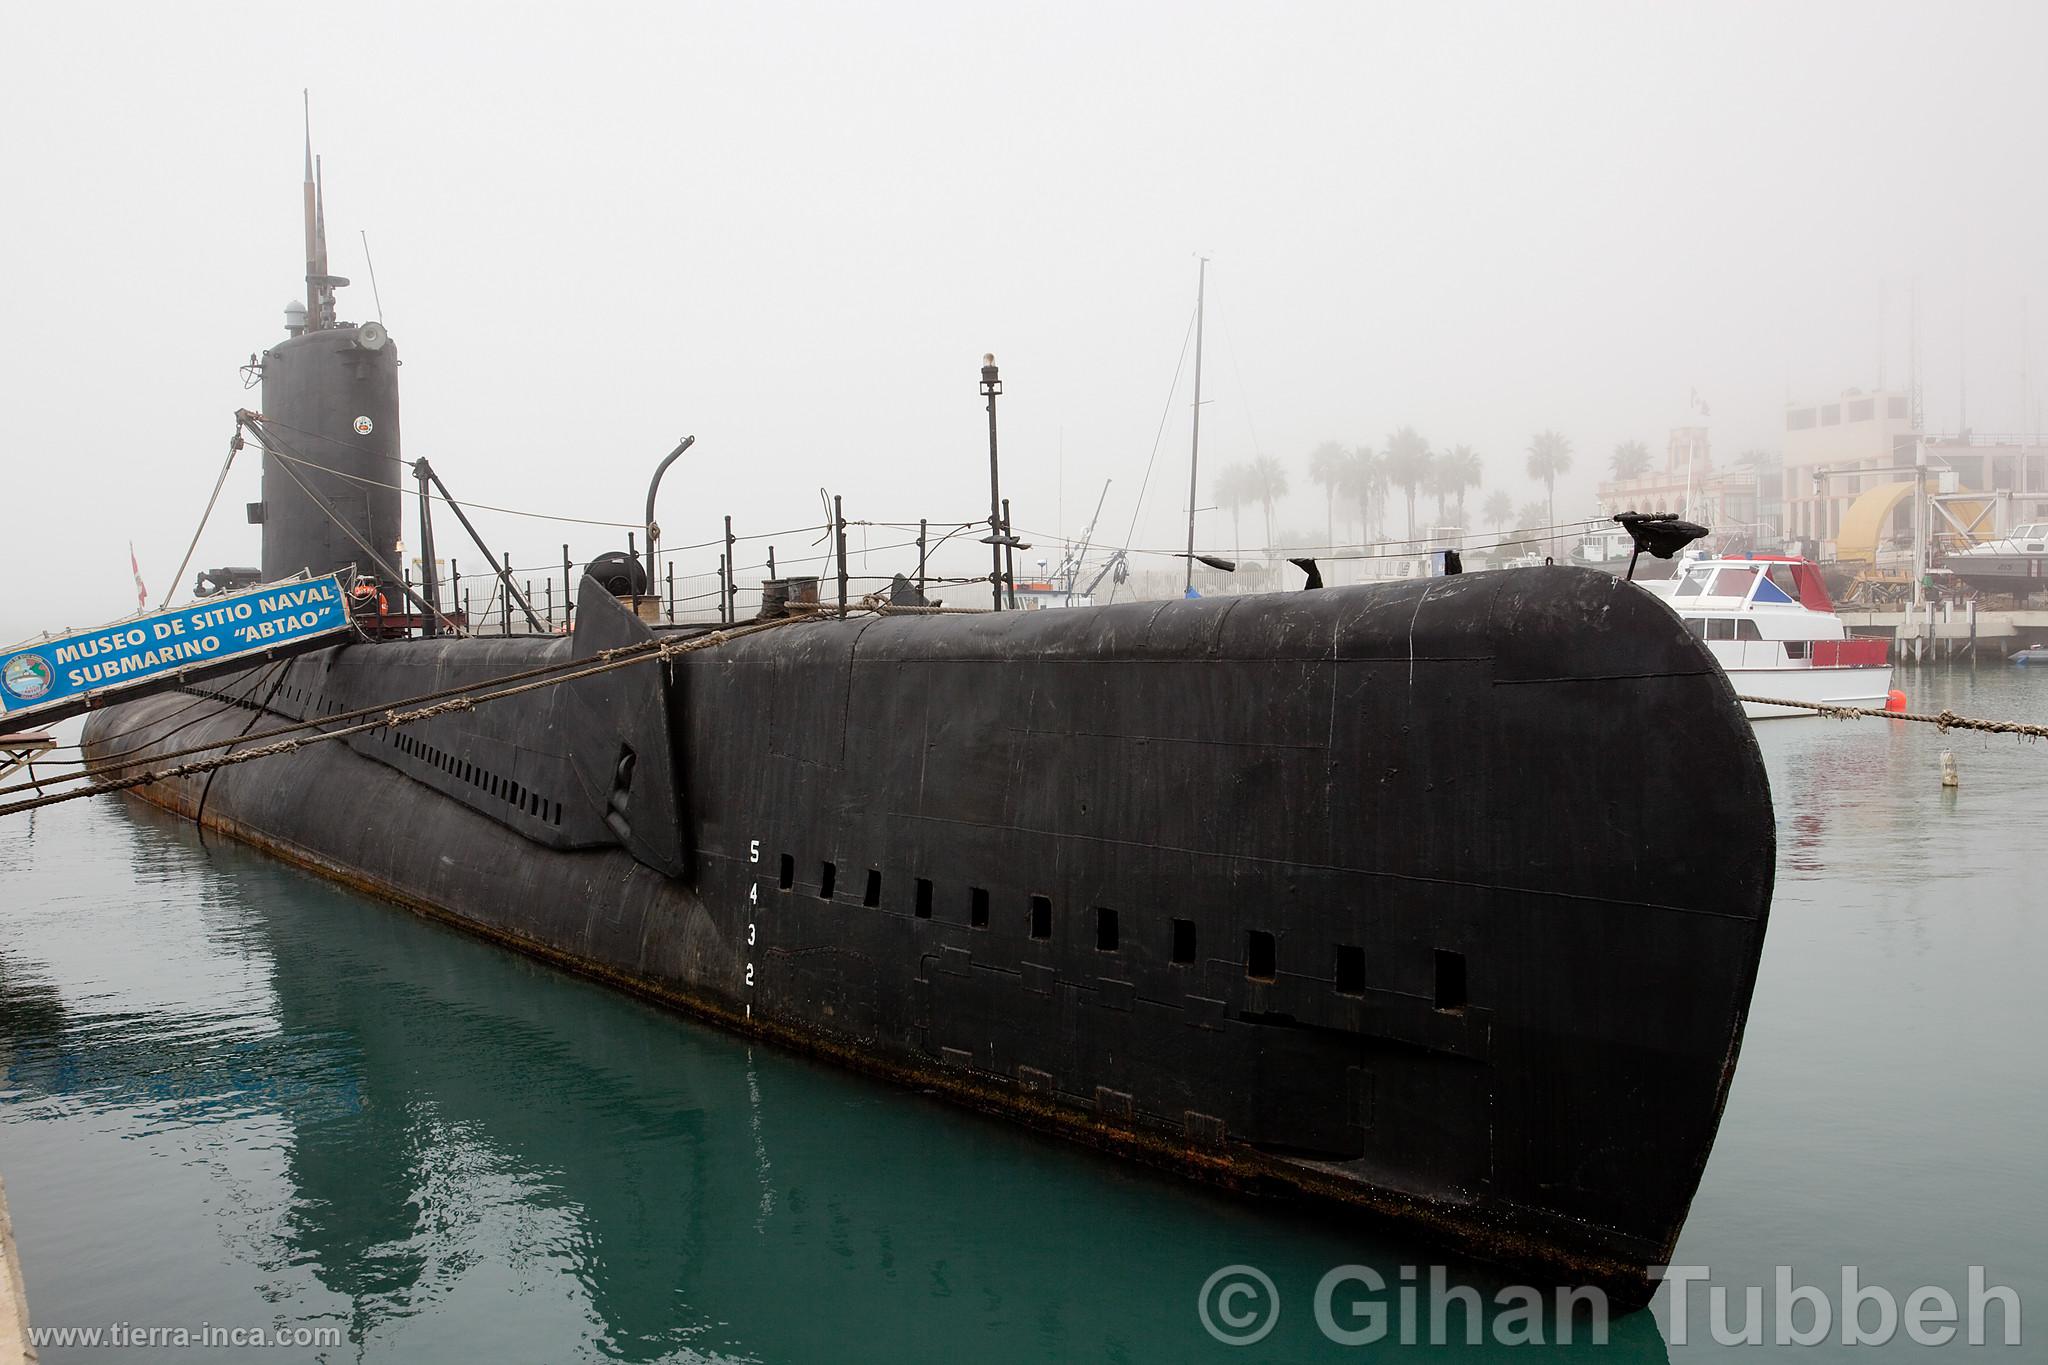 Museo de Sitio Naval Submarino Abtao, Callao